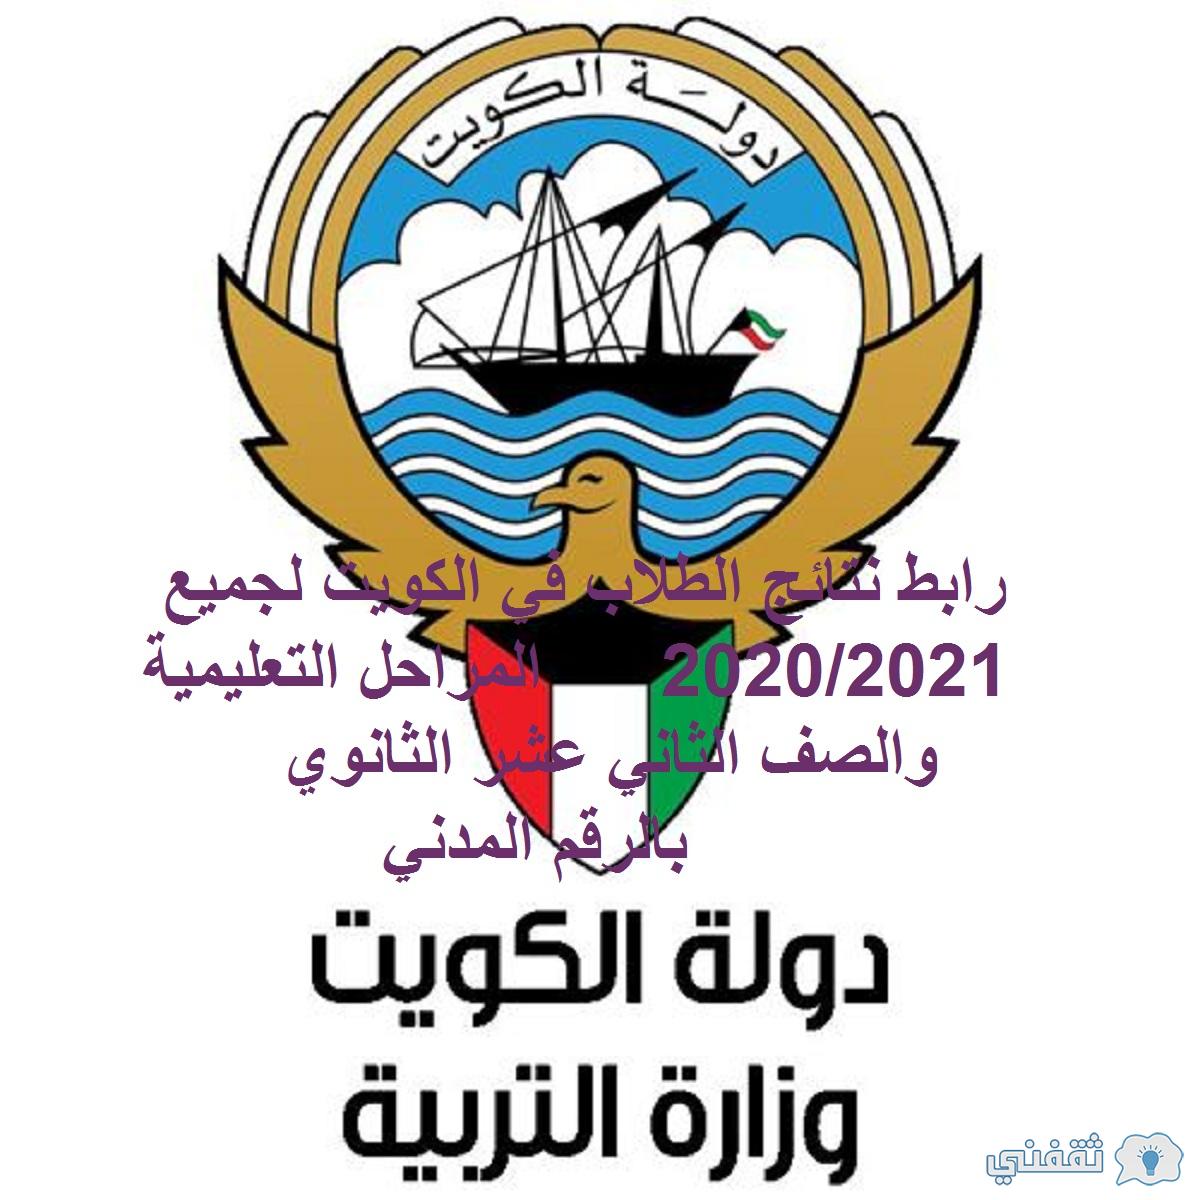 رابط نتائج الطلاب في الكويت لجميع المراحل التعليمية 2020/2021 بالرقم المدني